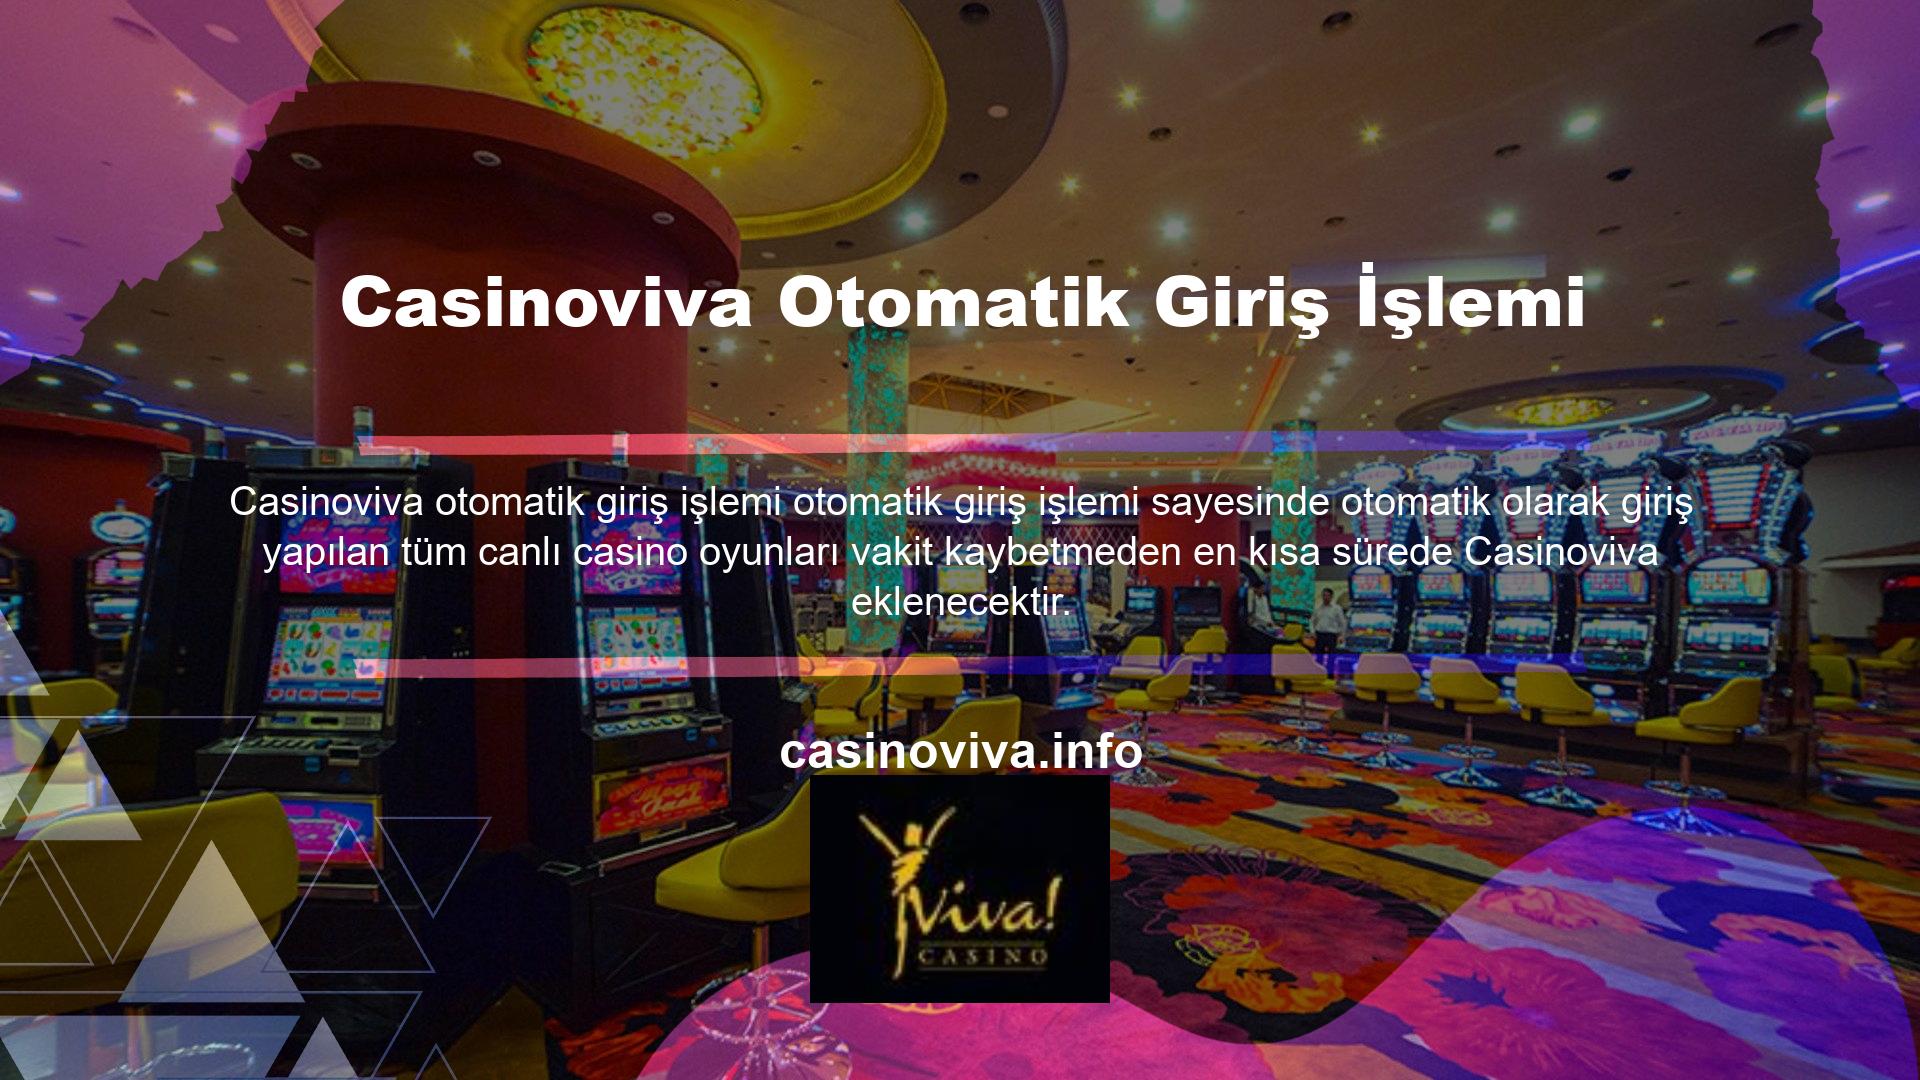 Canlı casino oyunları söz konusu olduğunda Casinoviva Casino Oyunları bölümümüzde geniş bir oyun yelpazesi sunuyoruz